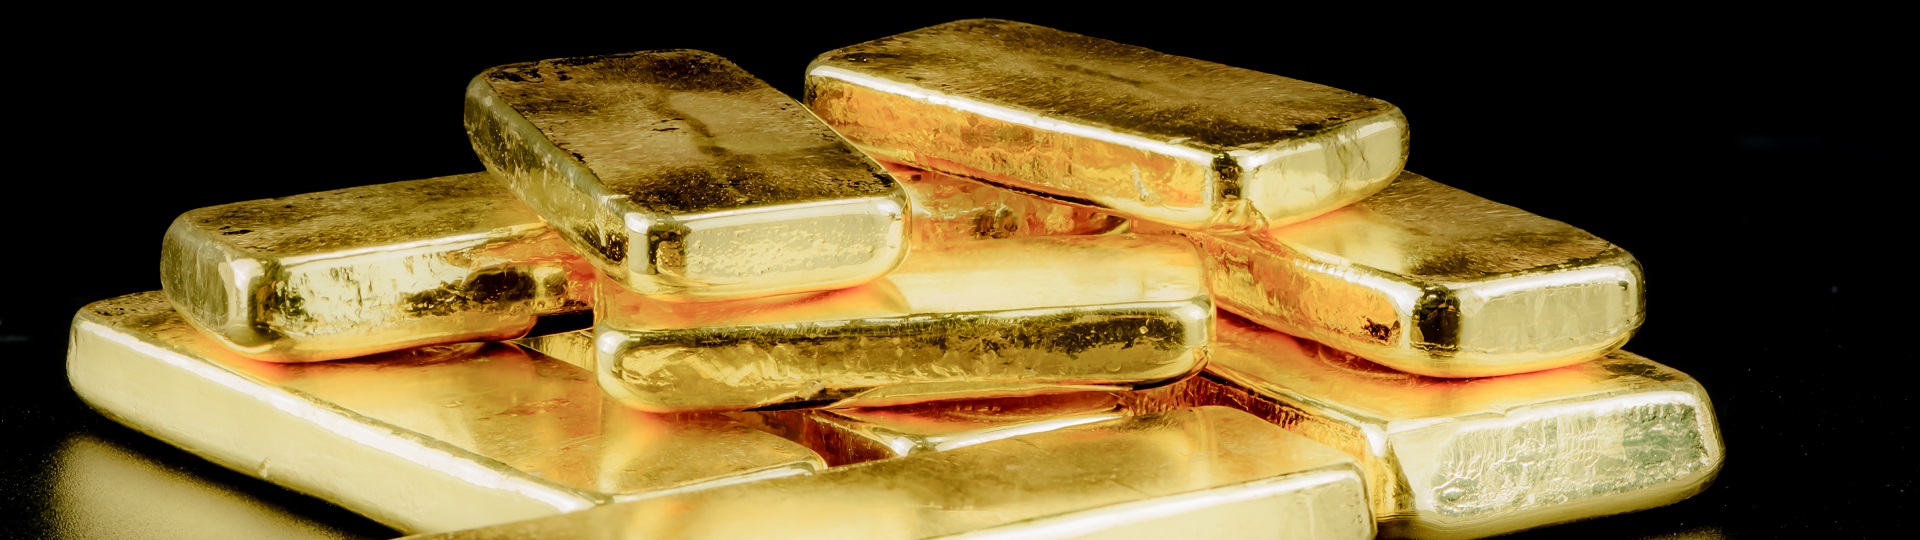 Cena zlata překonala hranici 1 300 dolarů za trojskou unci